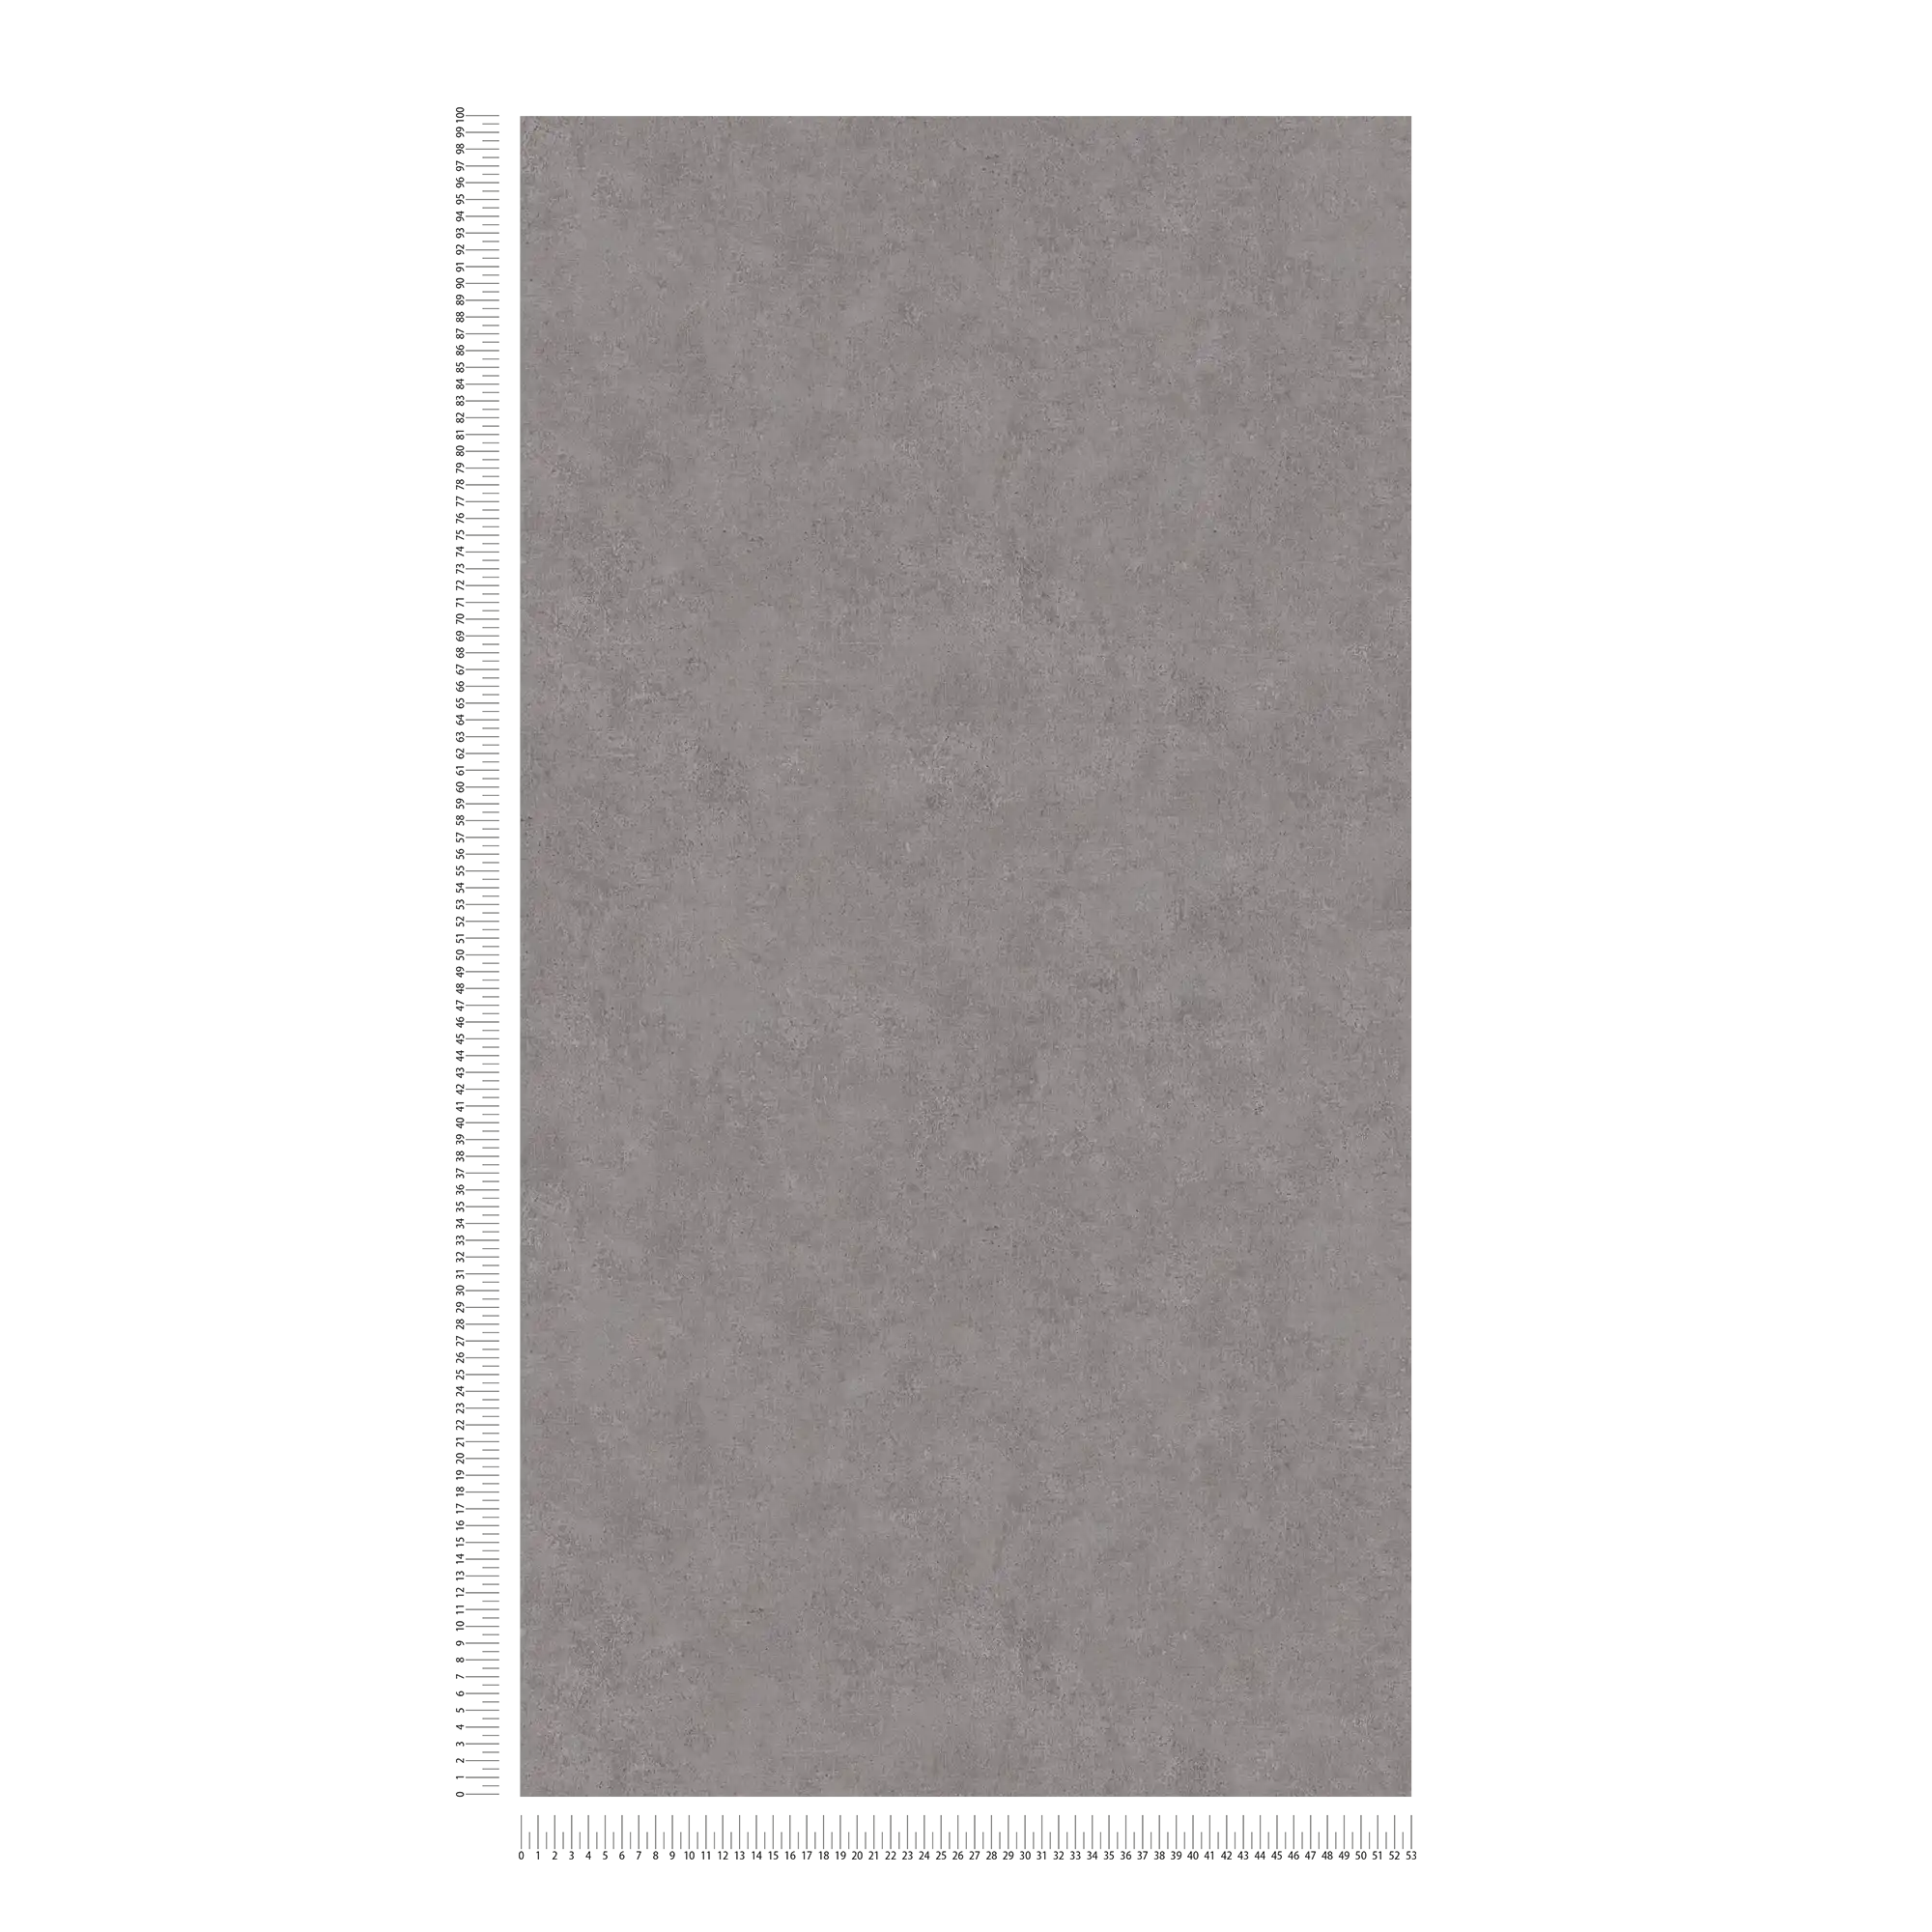             Carta da parati in tessuto non tessuto a tinta unita, con motivi a colori e aspetto vintage - grigio
        